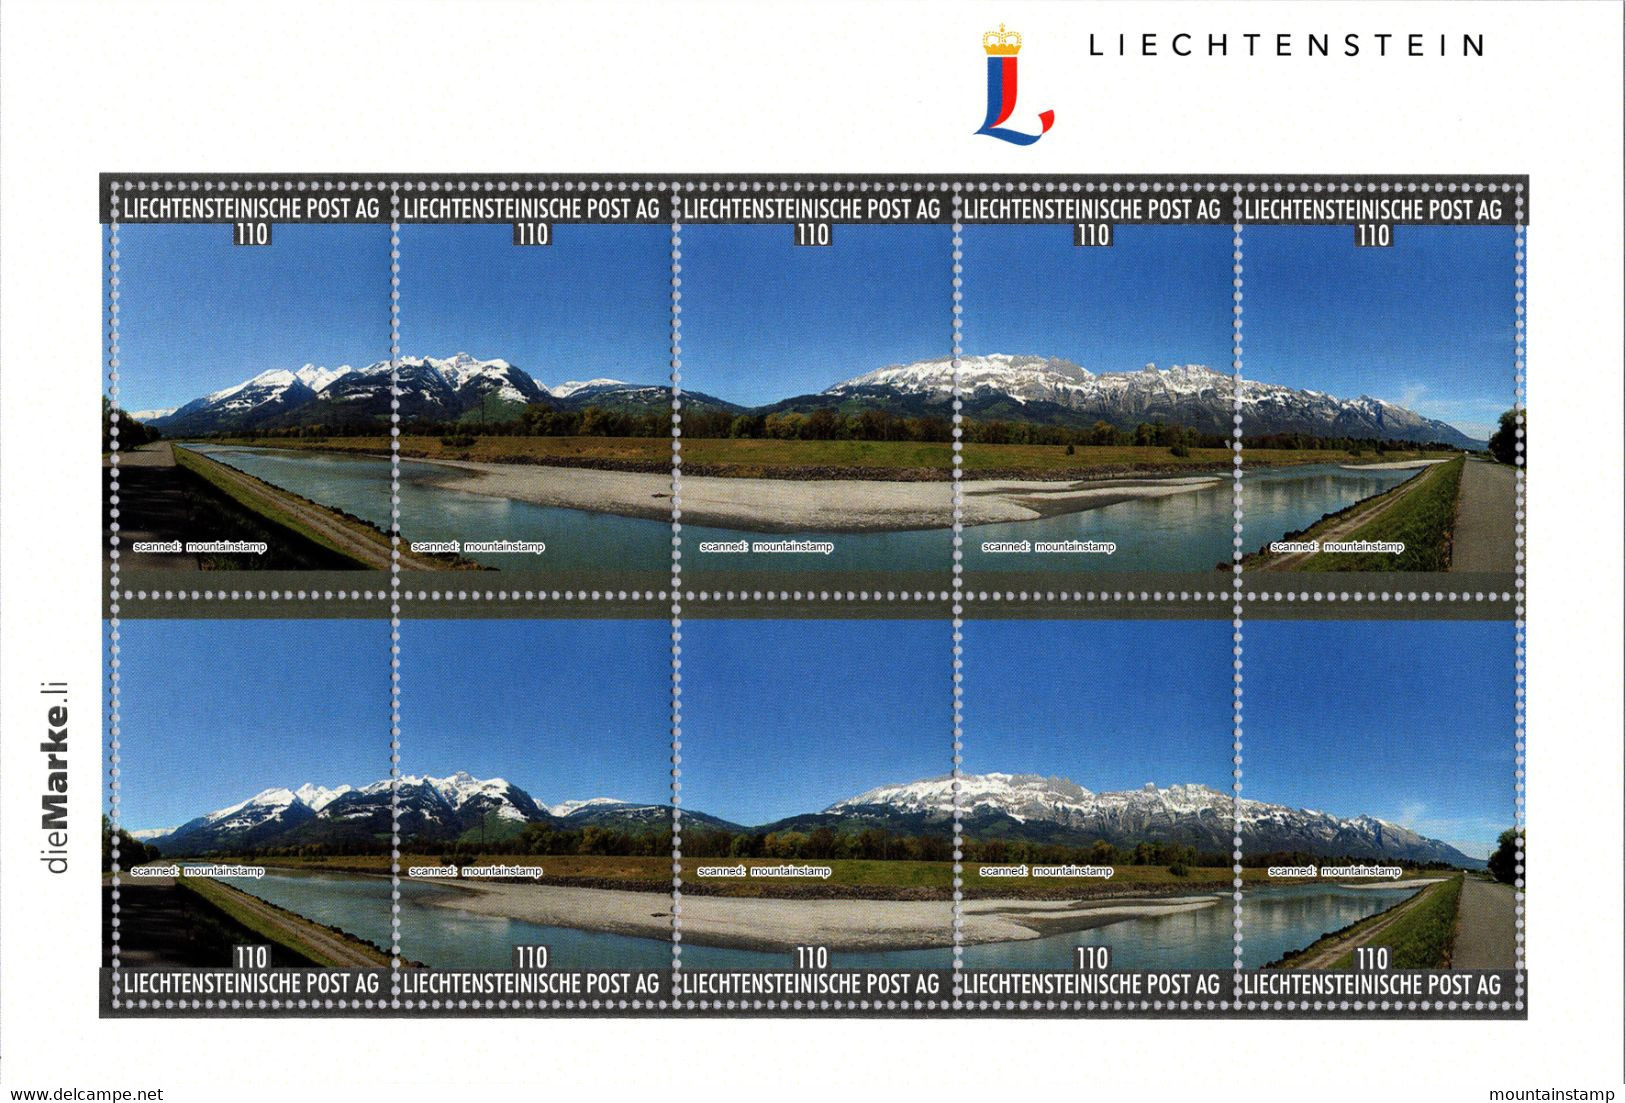 Liechtenstein 2022 "Die Marke" Fr.1.10 With Personalised 180 Degree Panorama Mountains Berge Alpstein & Alvier Range MNH - Ongebruikt